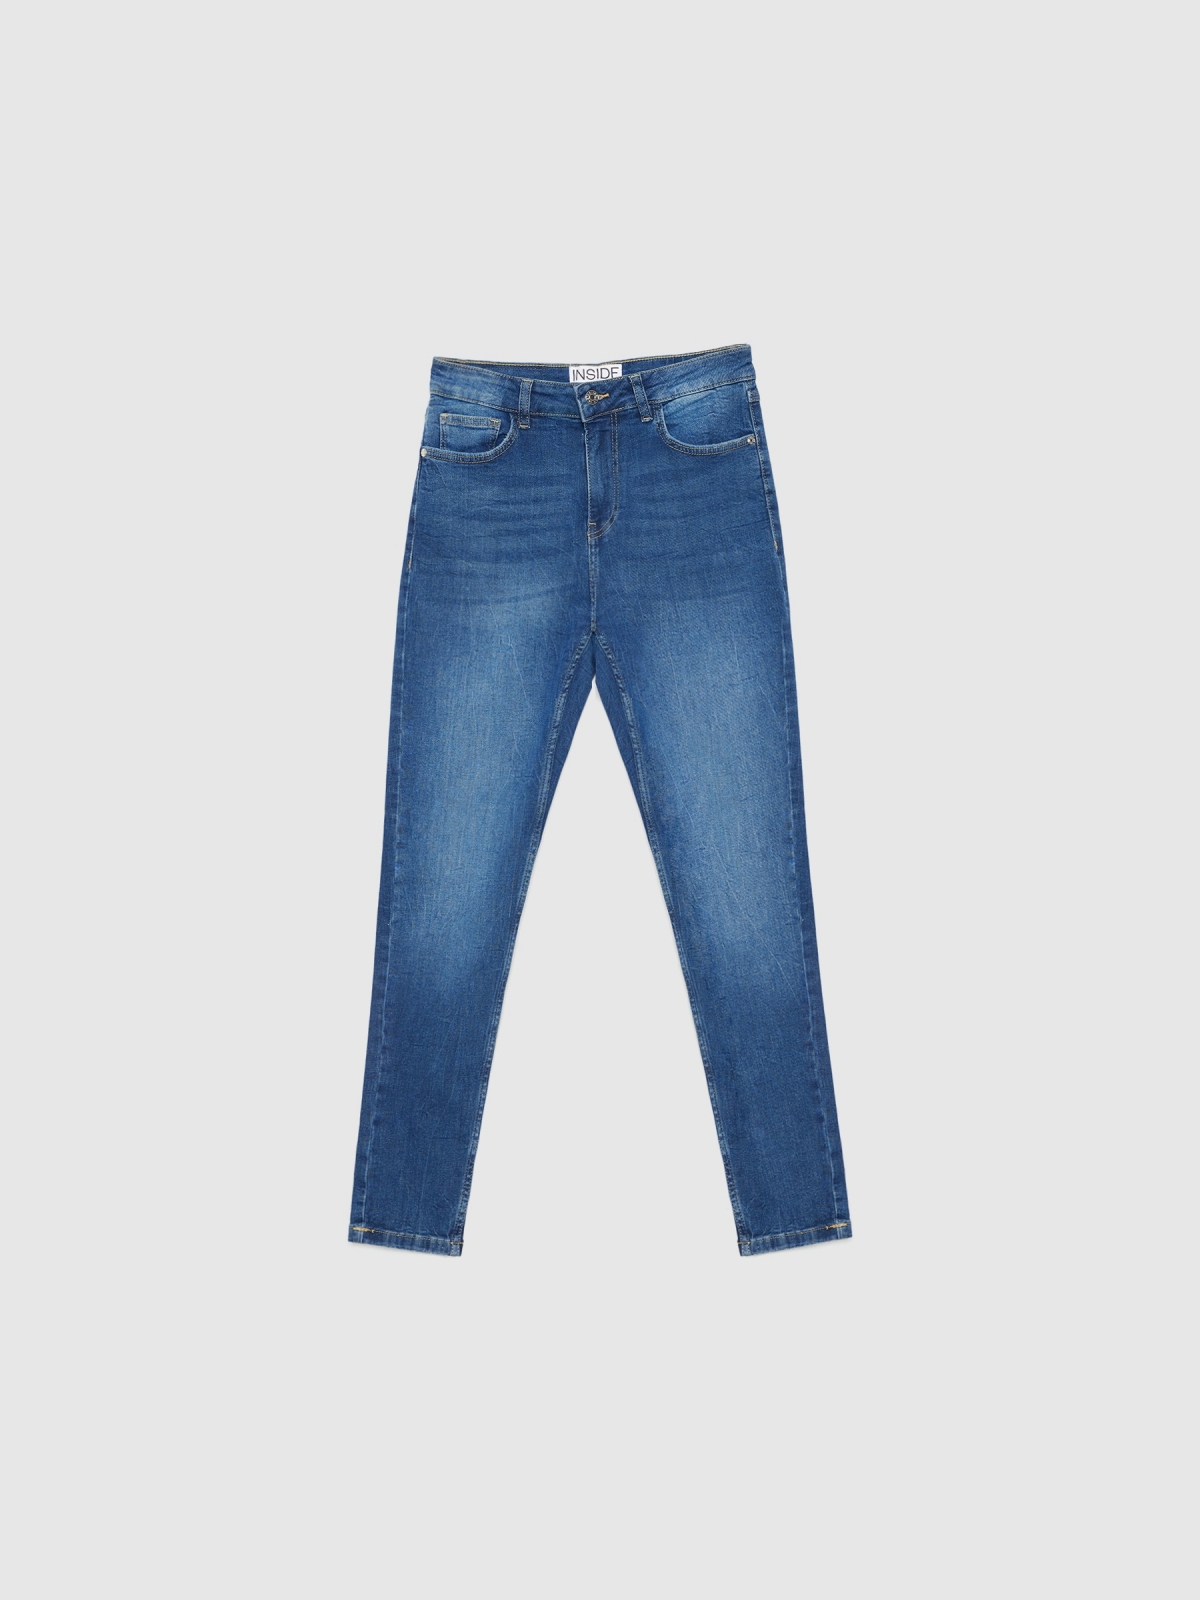  Jeans skinny de cintura média com rasgos azul escuro